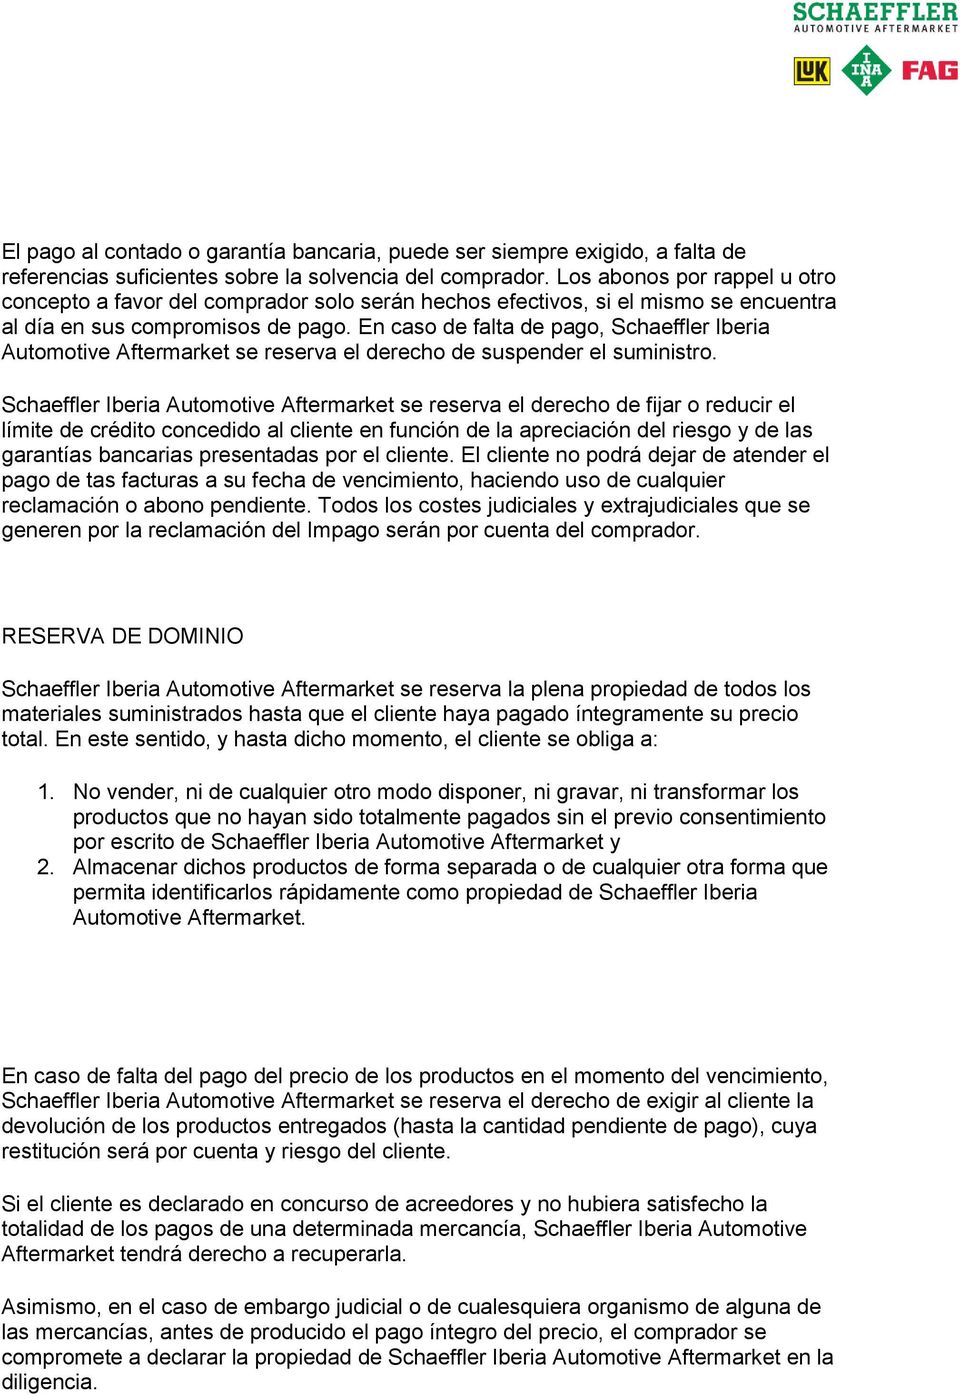 En caso de falta de pago, Schaeffler Iberia Automotive Aftermarket se reserva el derecho de suspender el suministro.